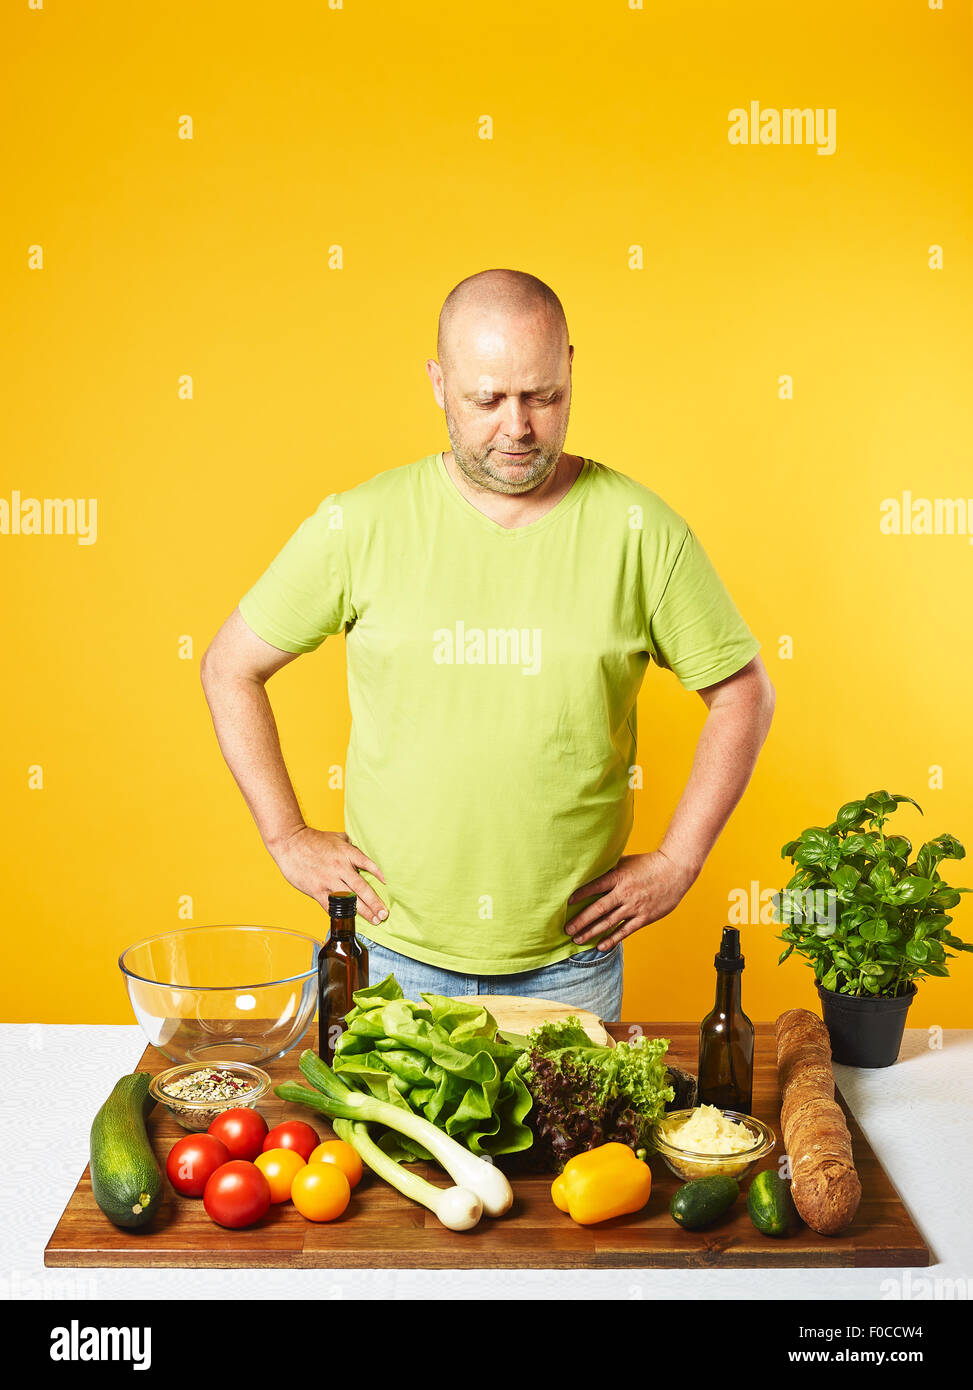 Salade fraîche ingrédients sur la table, homme d'âge moyen - copie l'espace et le fond jaune Banque D'Images